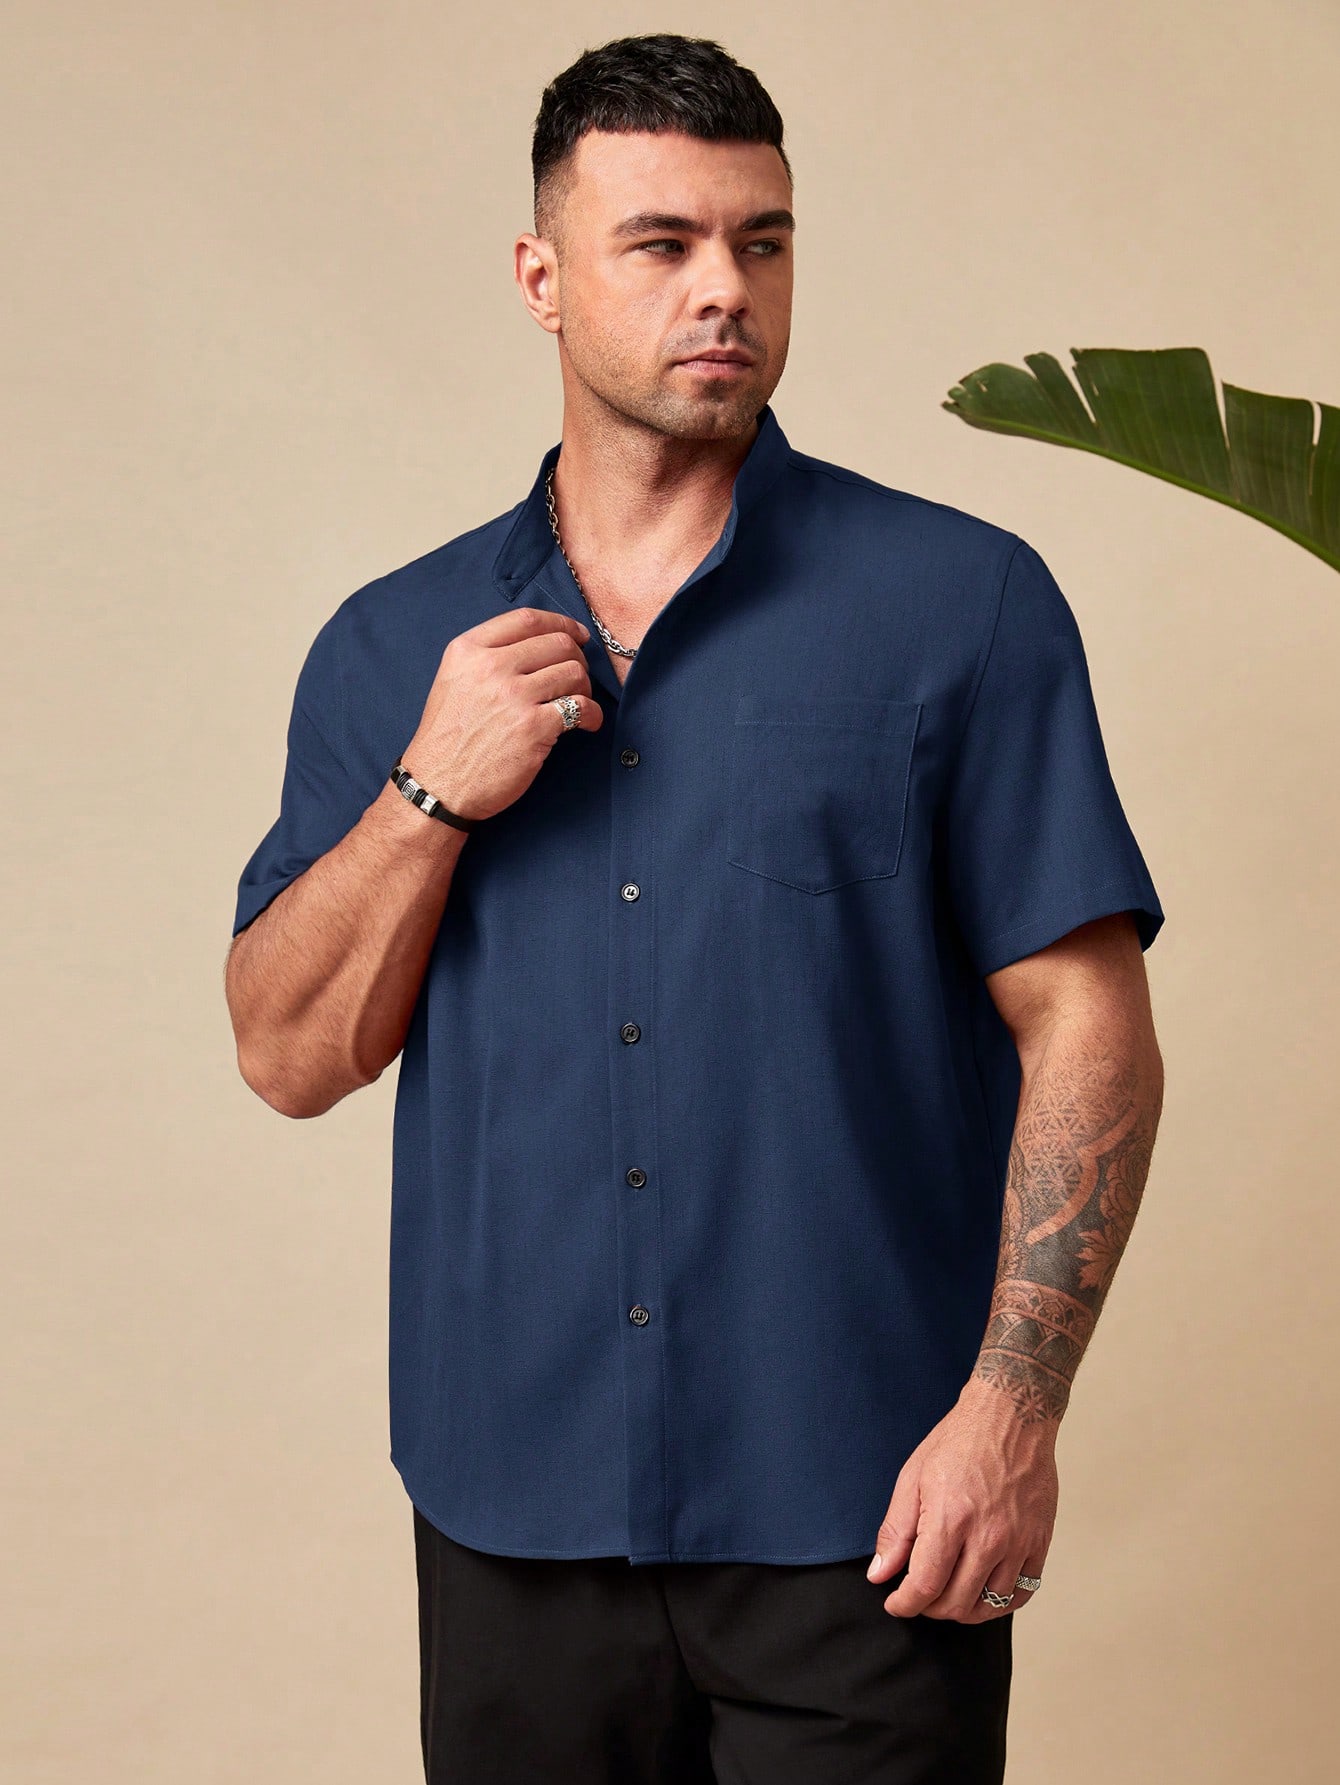 Manfinity Homme Мужская рубашка свободного кроя больших размеров на пуговицах с короткими рукавами и накладными карманами больших размеров, темно-синий